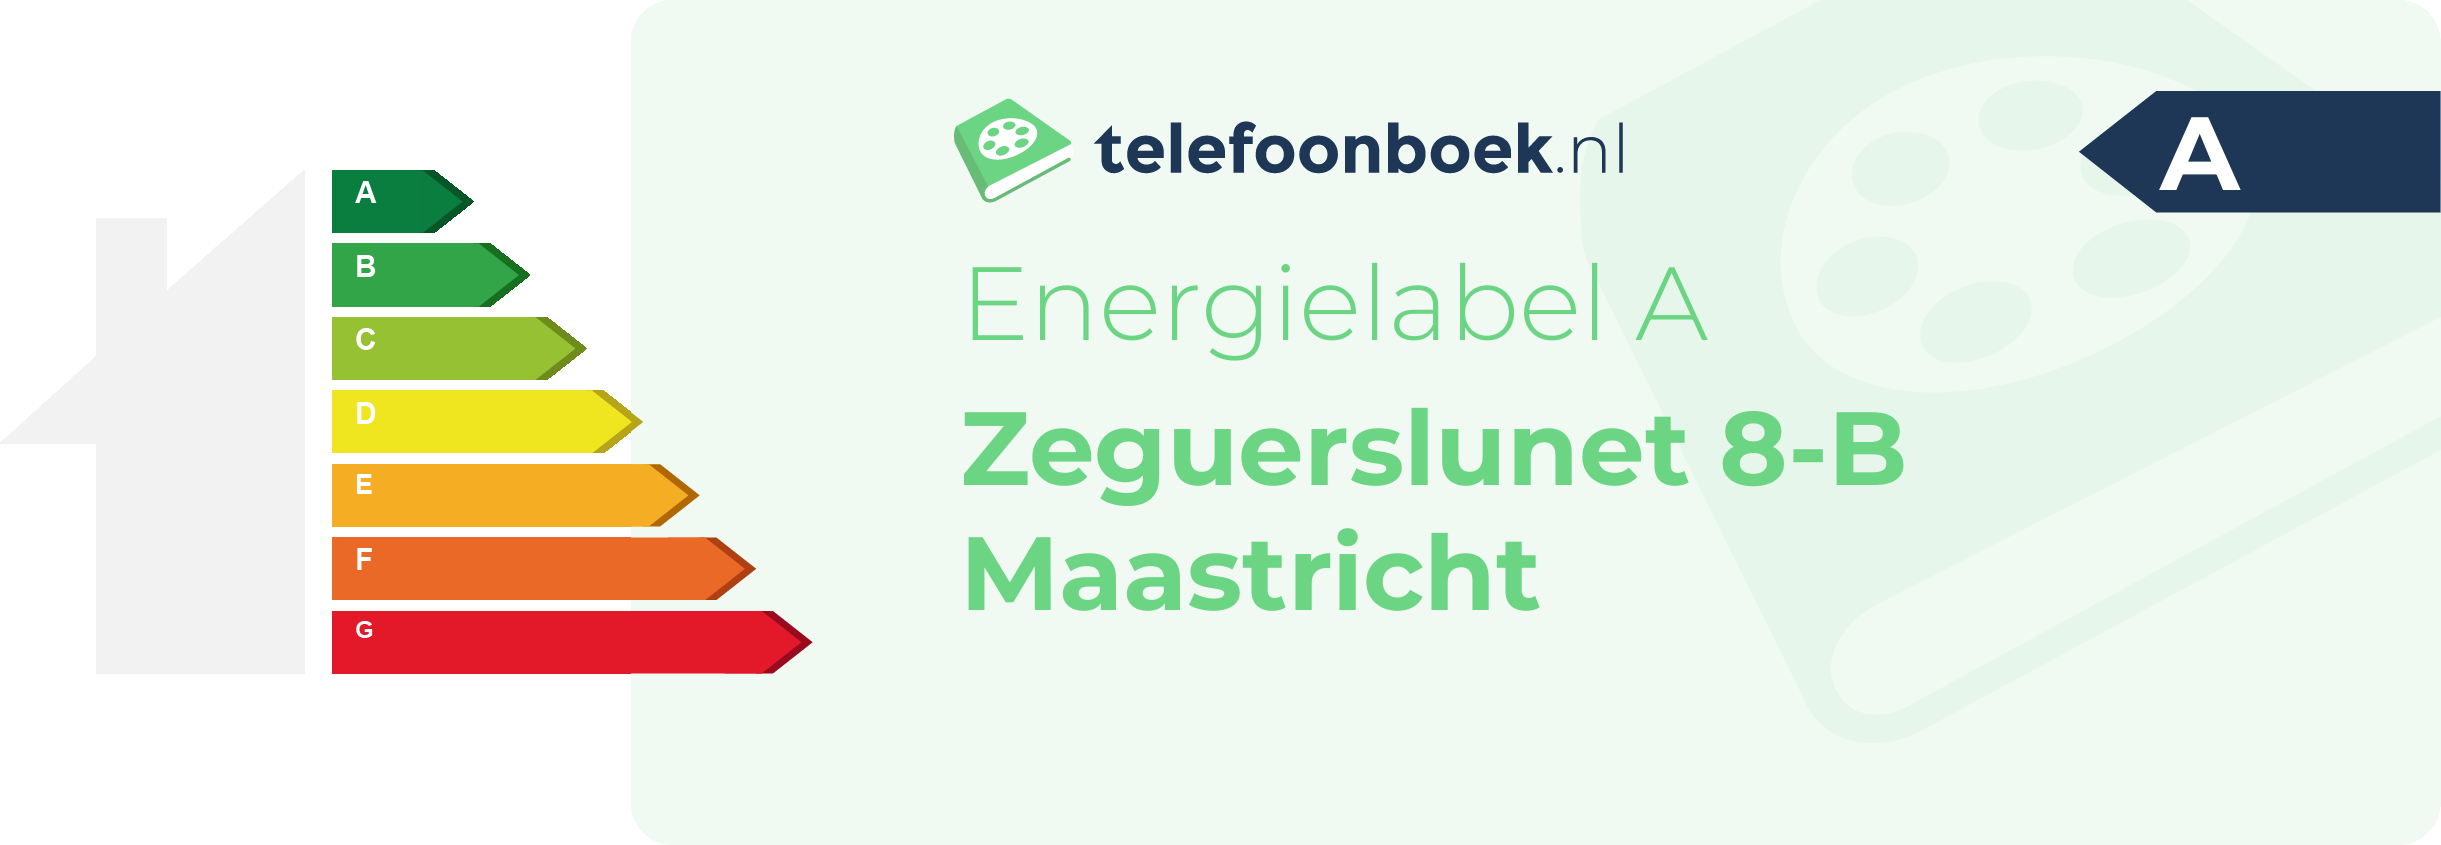 Energielabel Zeguerslunet 8-B Maastricht